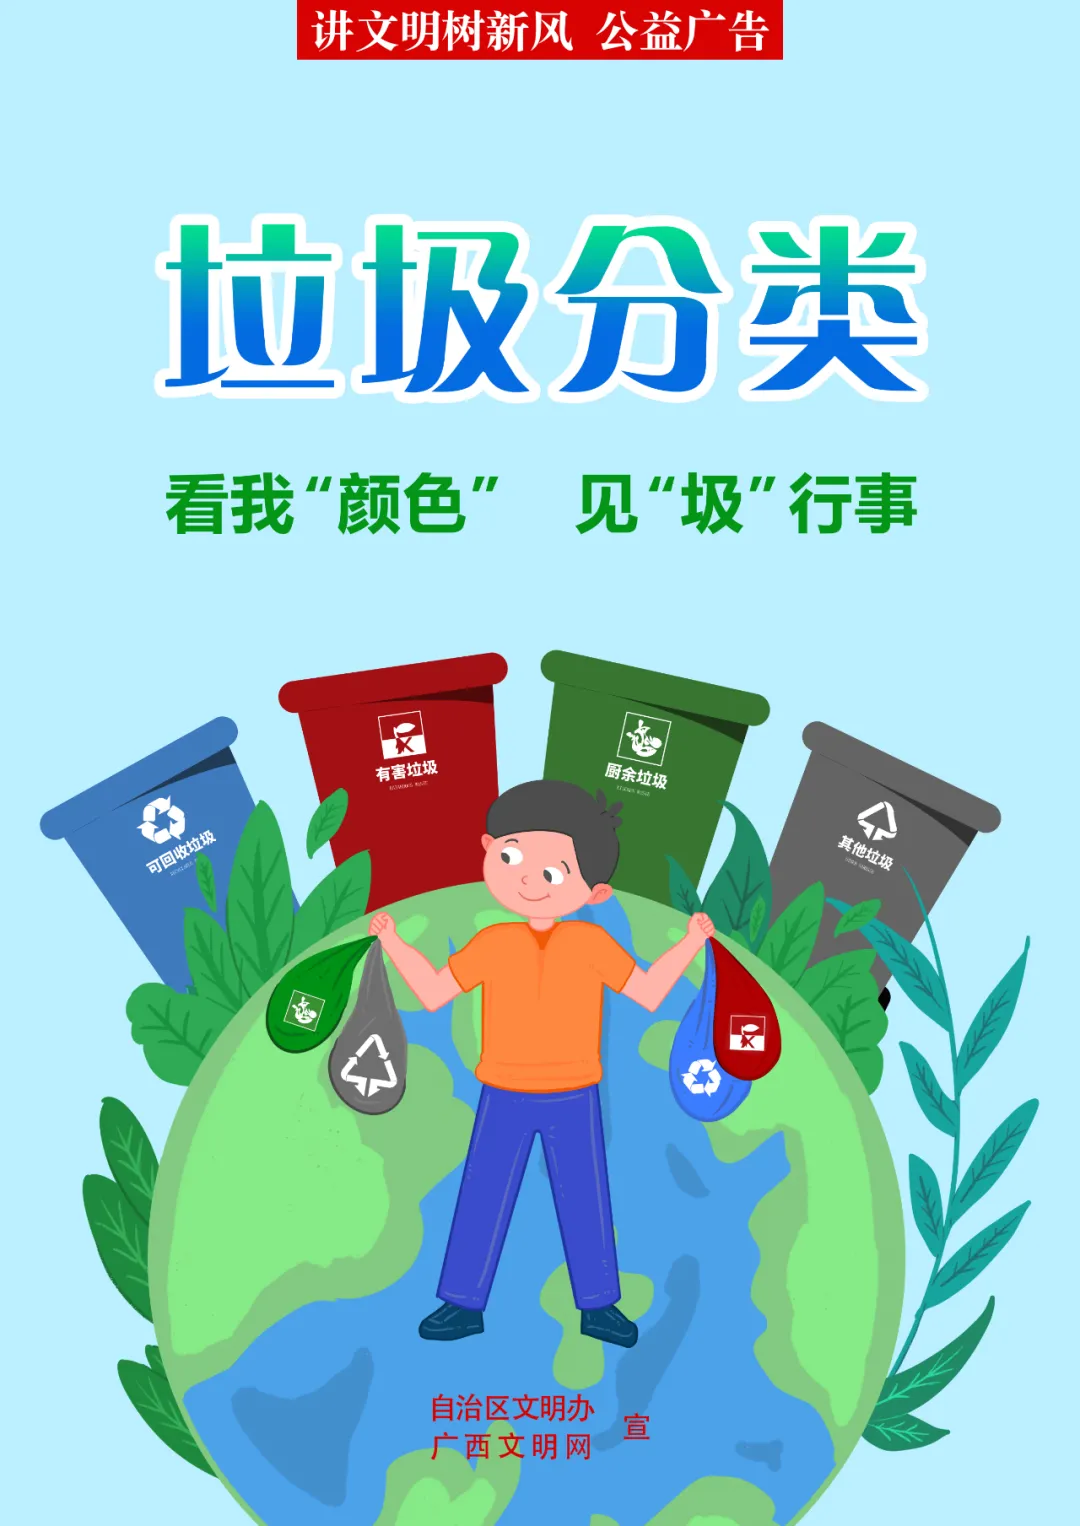 垃圾分类 | 践行垃圾分类 倡导绿色生活